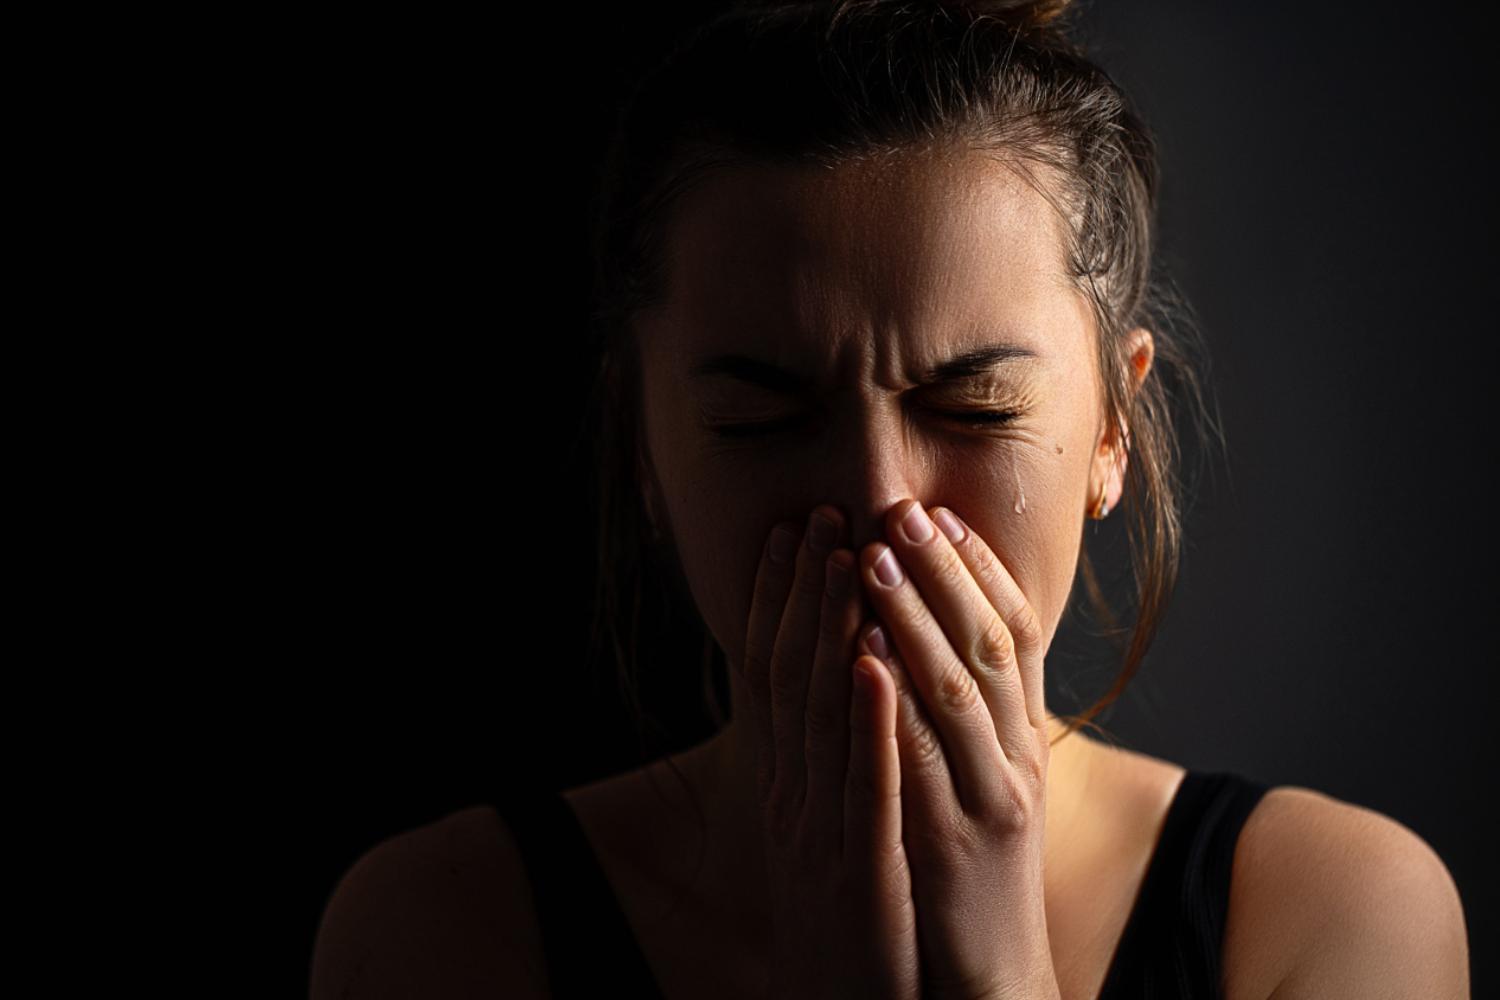 Imagem de uma mulher chorando, representando o luto patológico